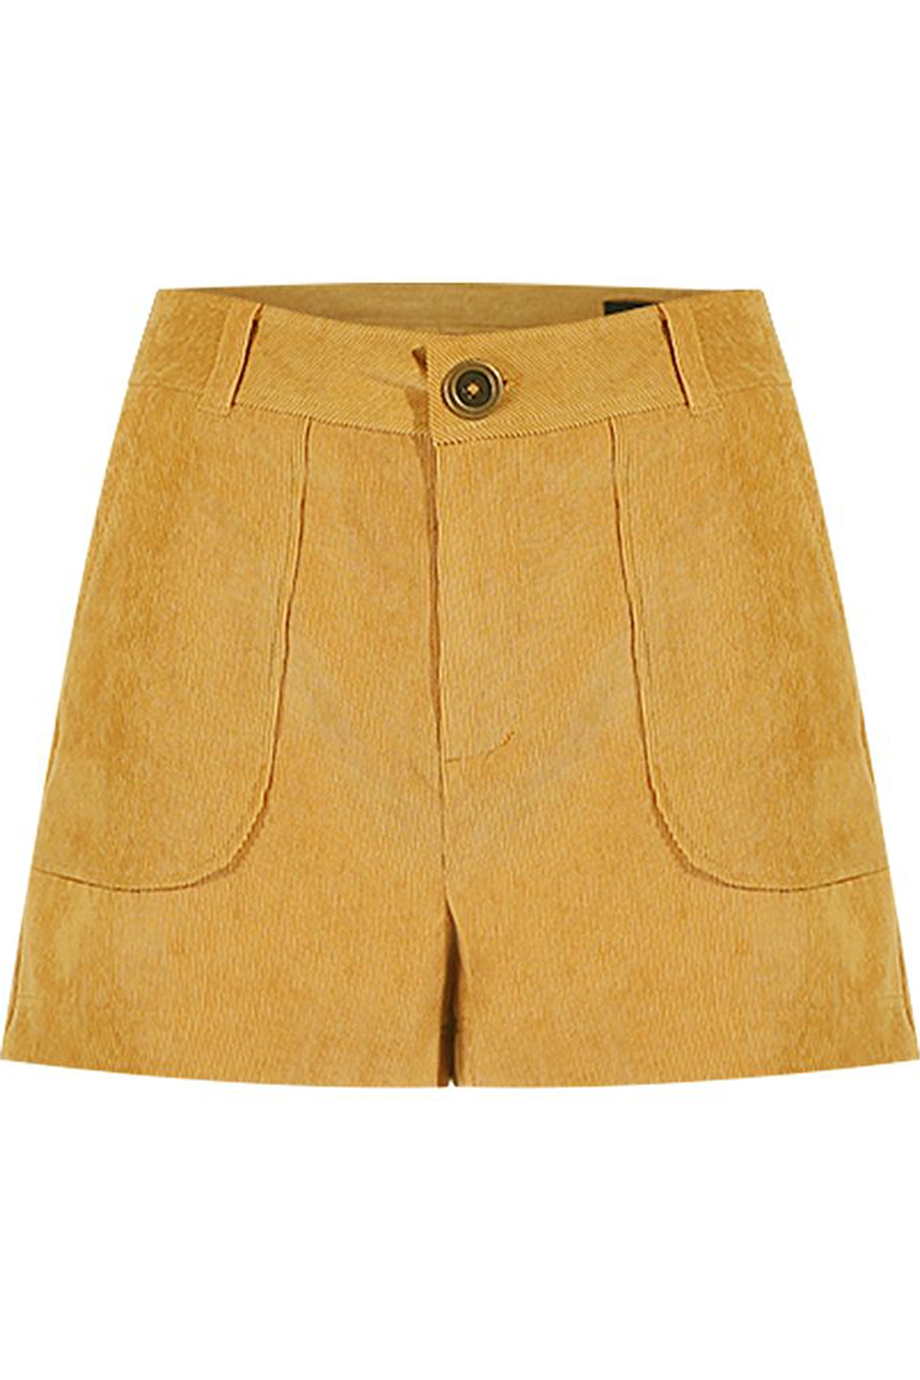 Quần short Brynn Corduroy Suit Short Pants/ Gold